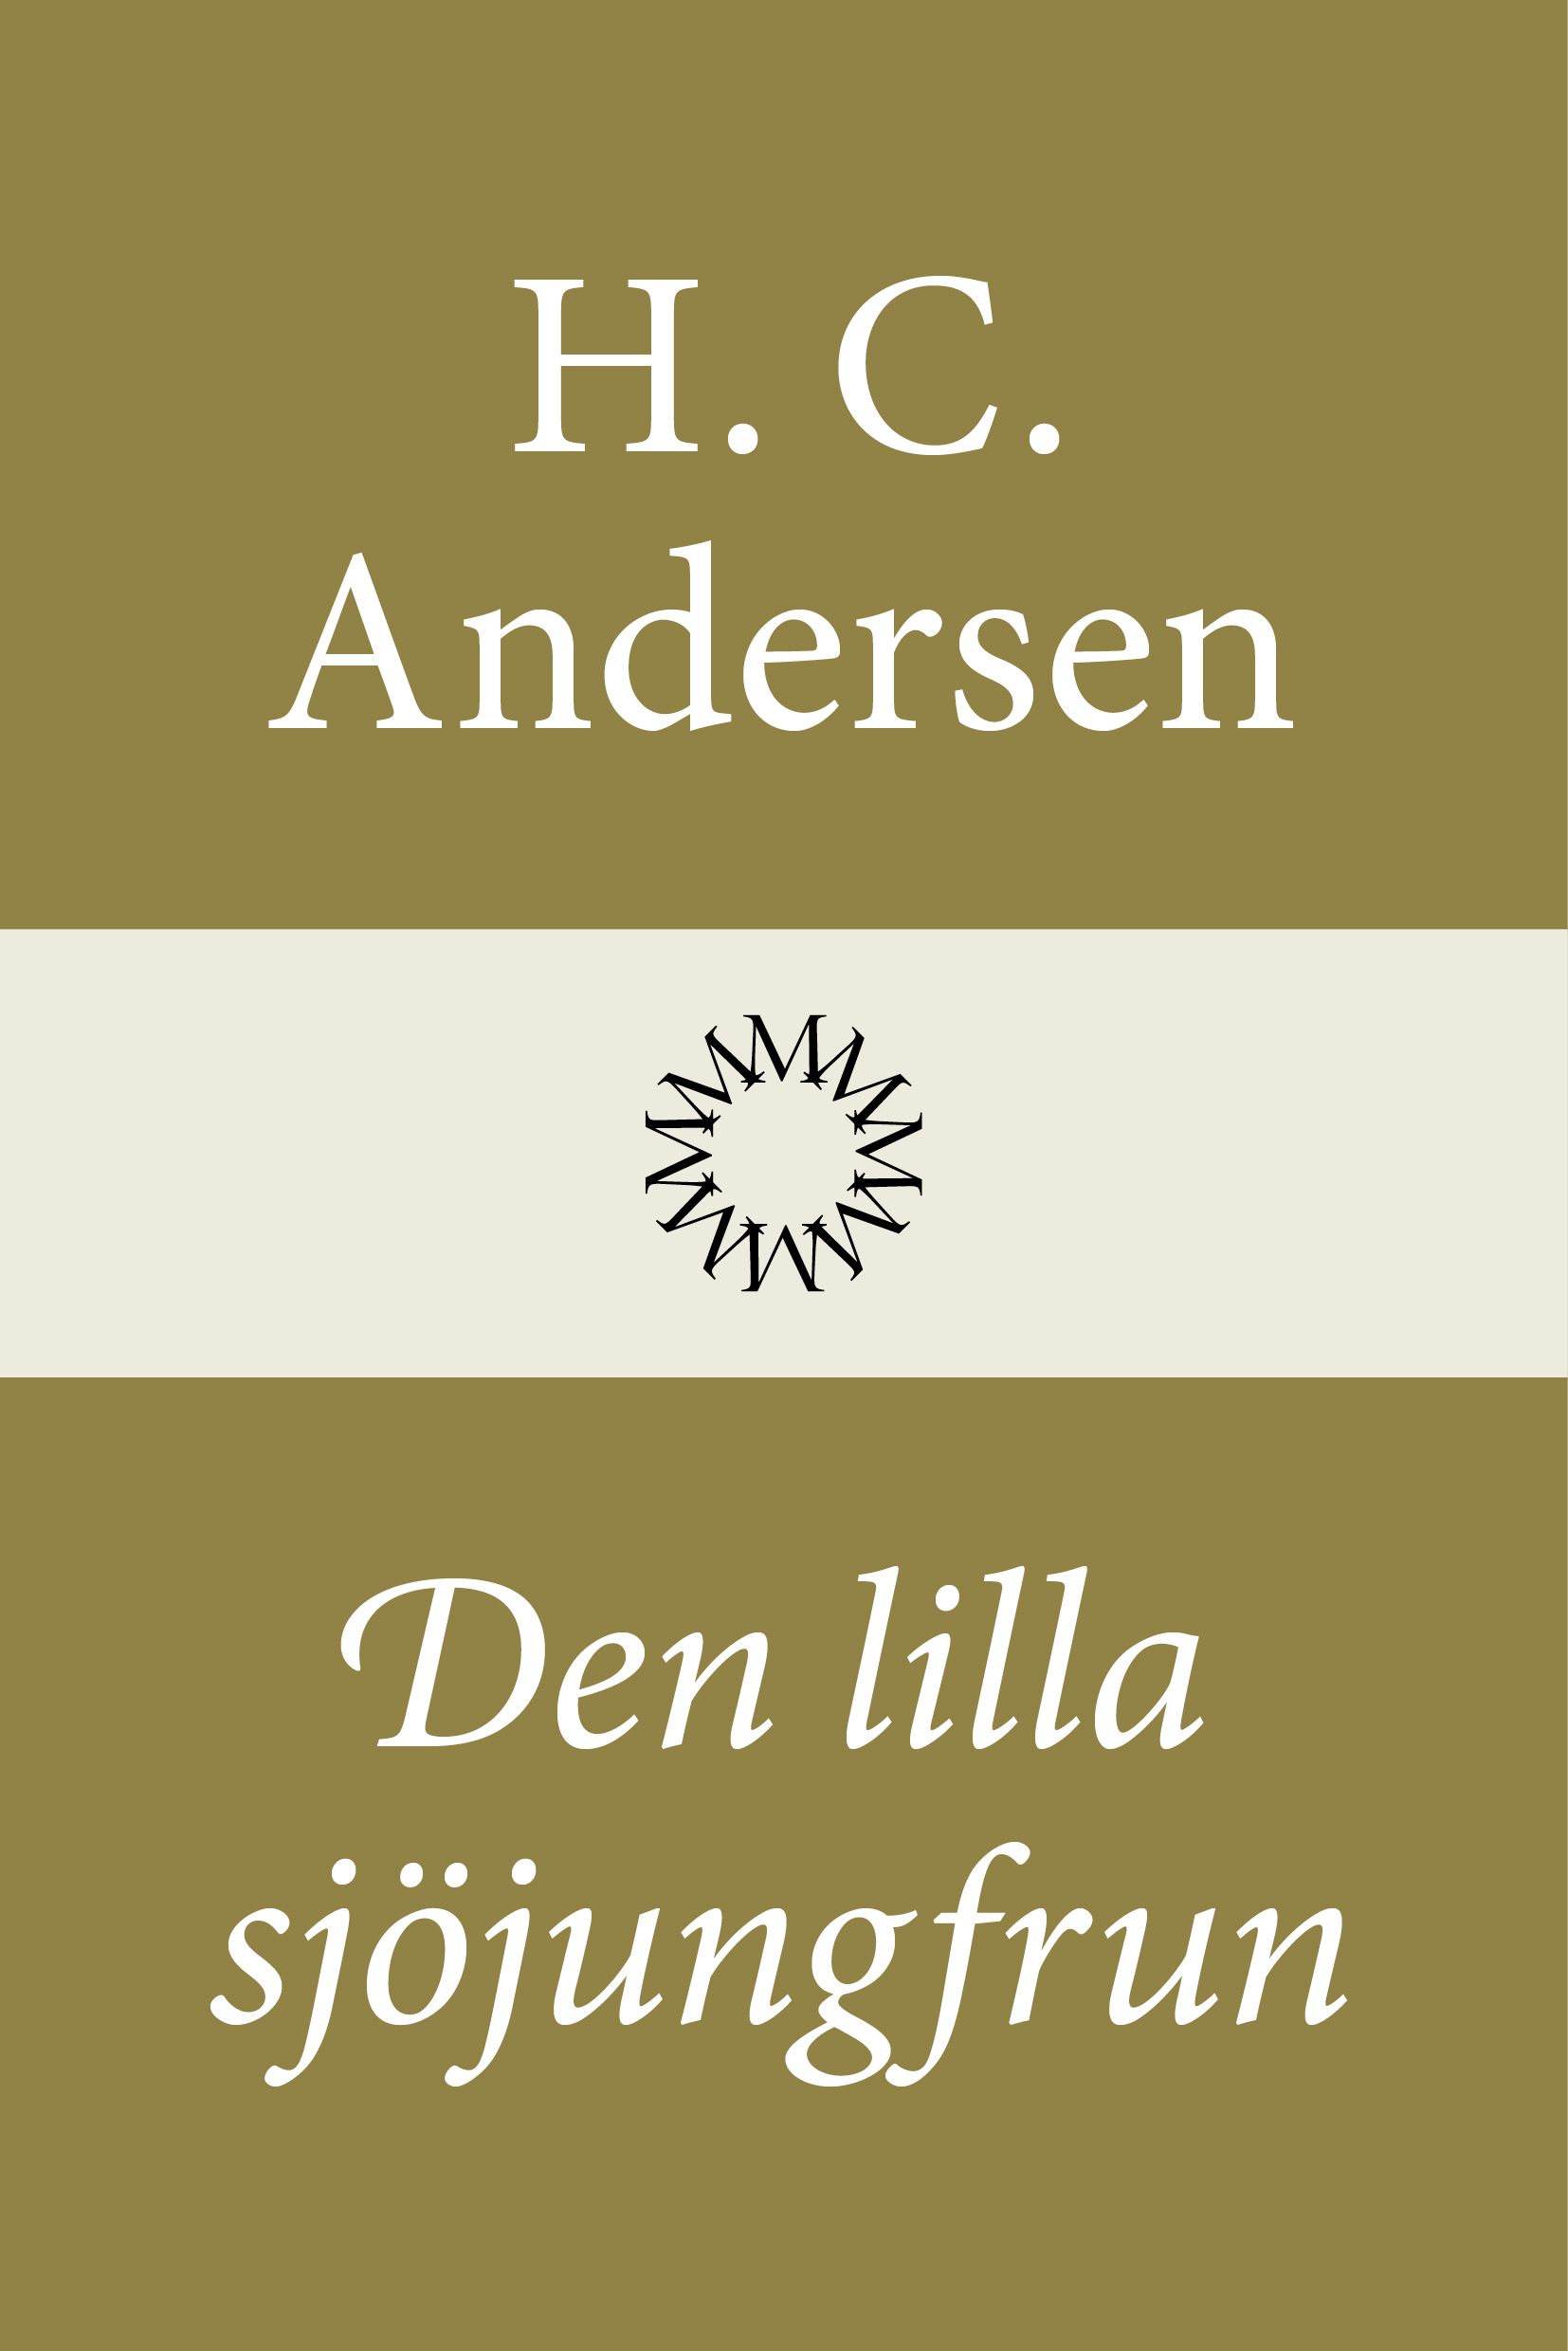 Den lilla sjöjungfrun, e-bok av H. C. Andersen